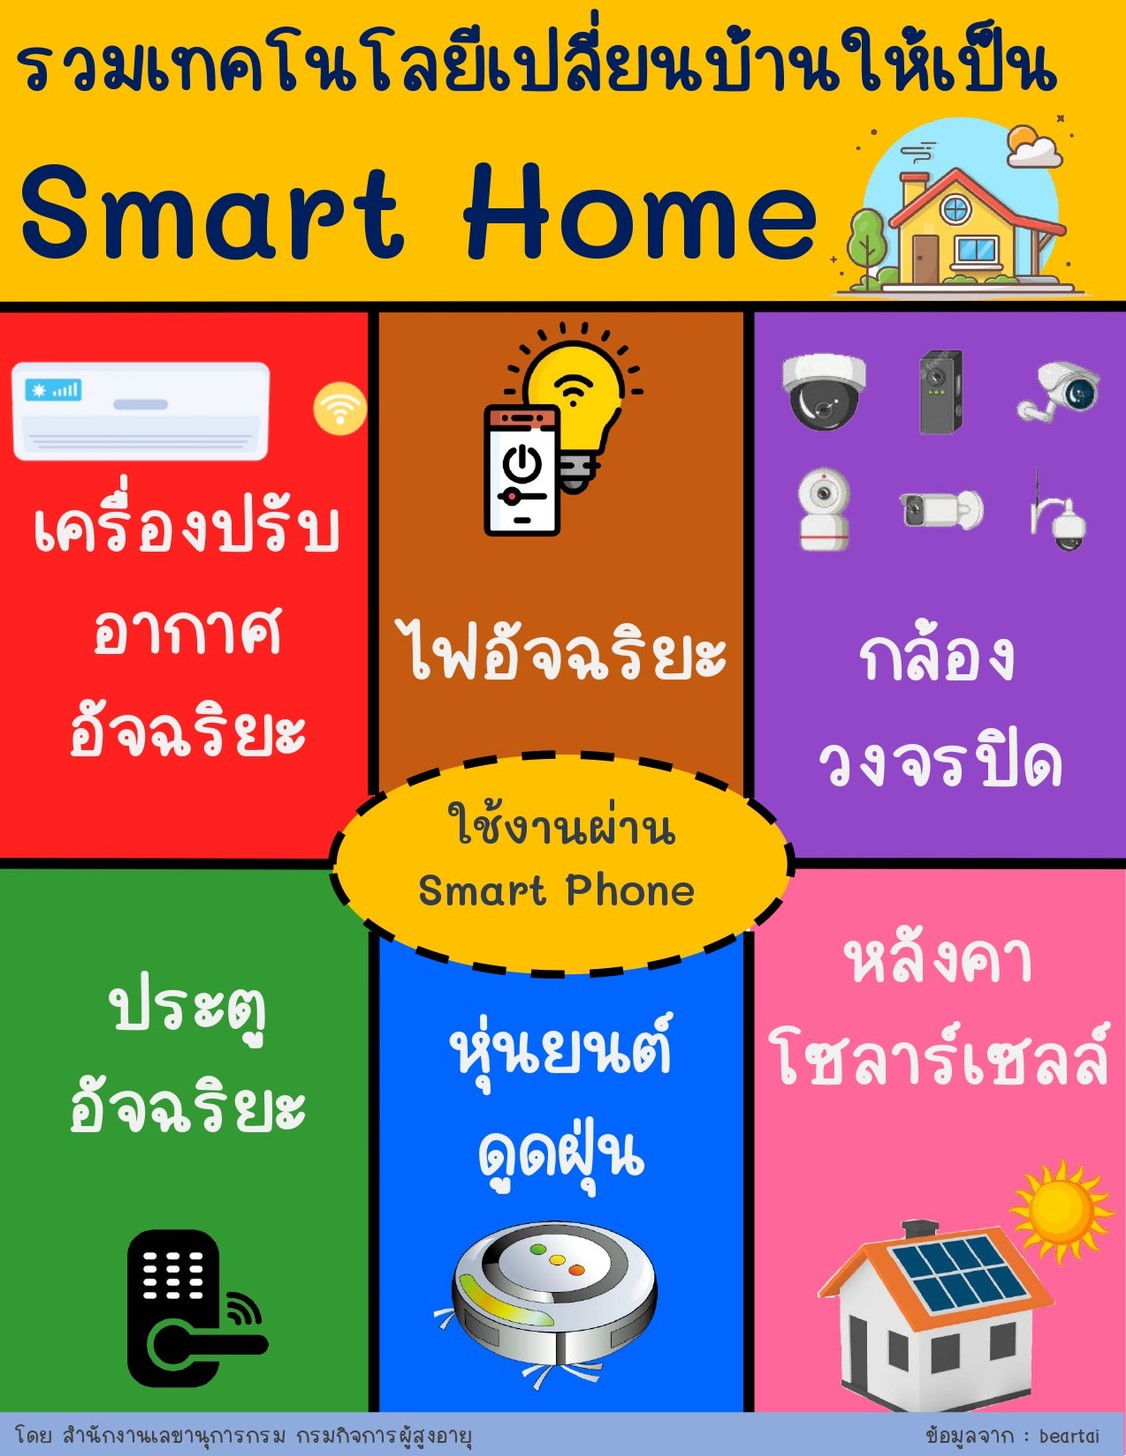 รวมเทคโนโลยีเปลี่ยนบ้านให้เป็น Smart Home  ประจำเดือนกุมภาพันธ์ 2565